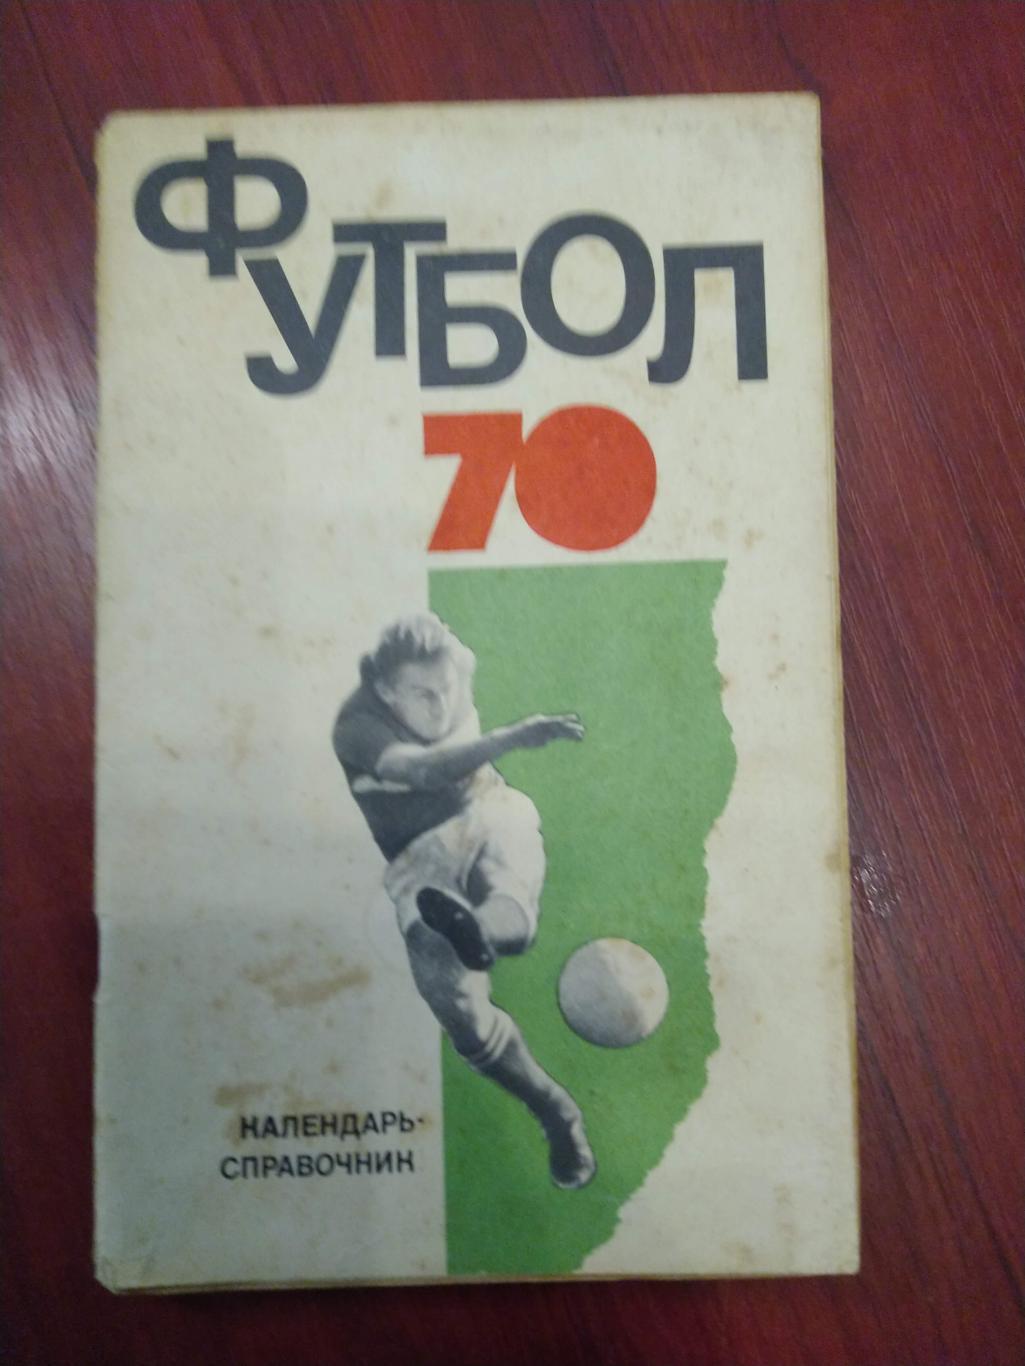 Футбол Календарь-справочник 1970 Москва